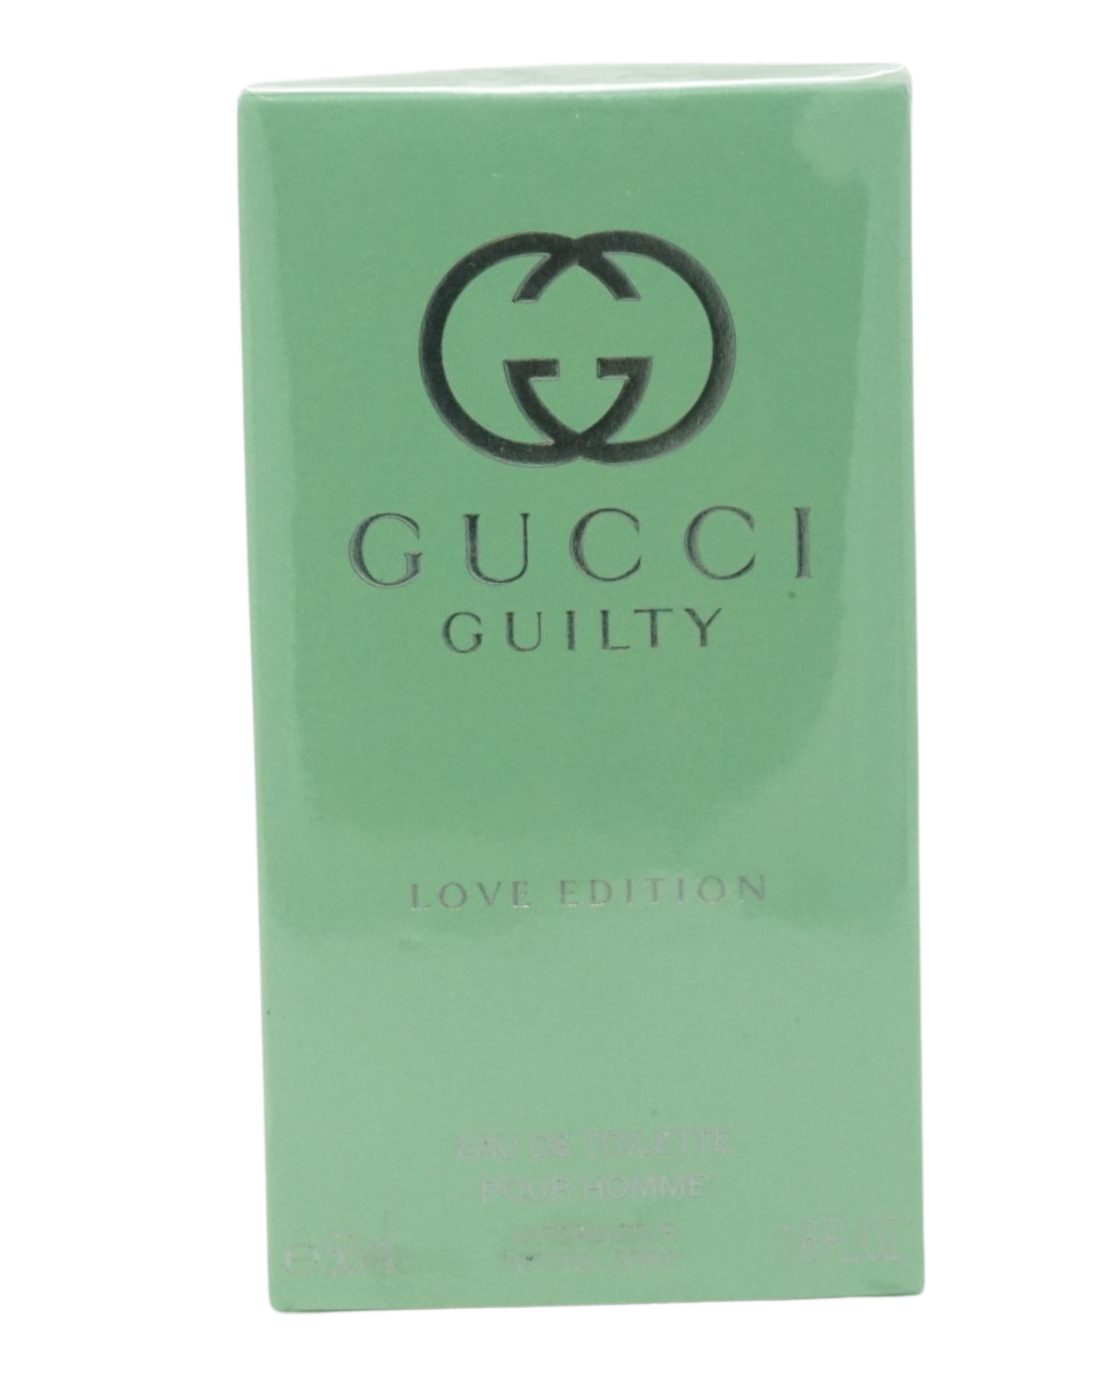 Eau pour homme Toilette Edition GUCCI de Eau Toilette 90ml Love Gucci Guilty de